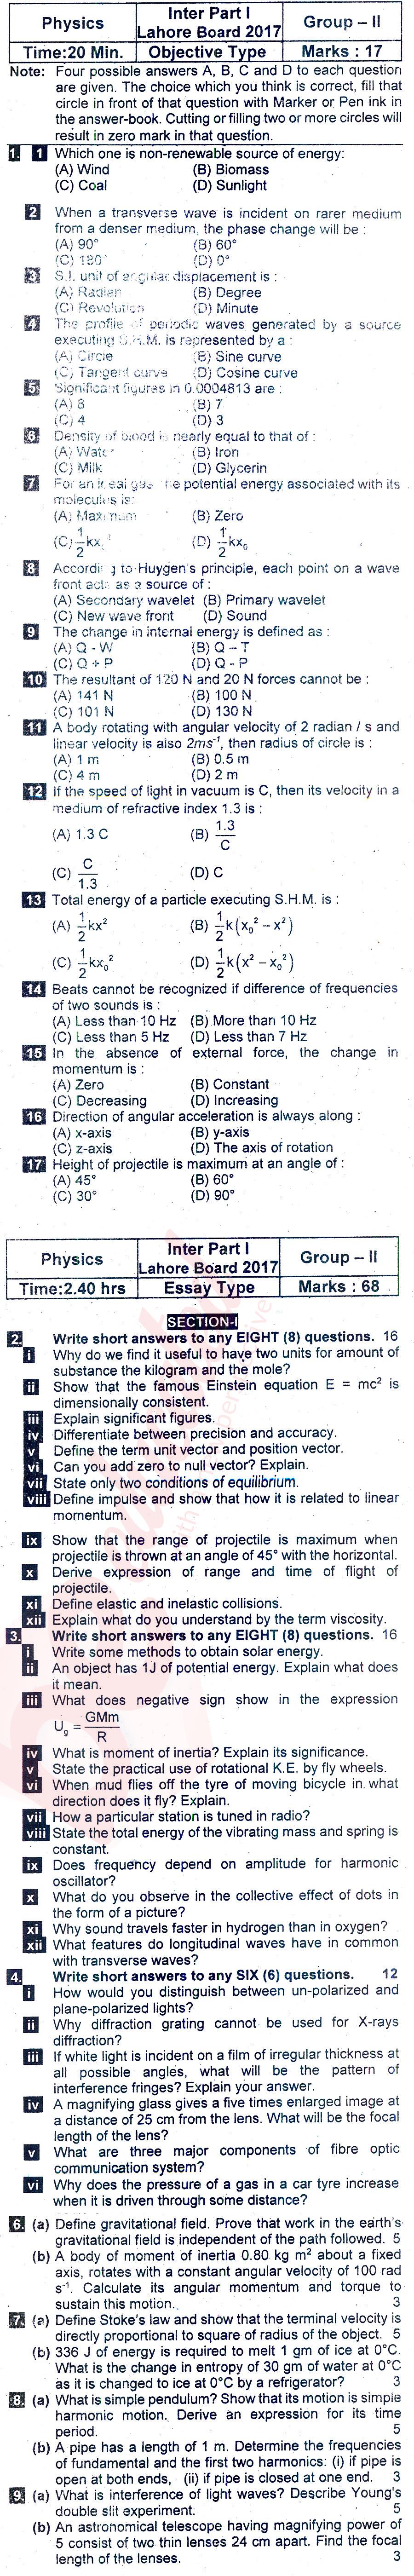 Physics FSC Part 1 Past Paper Group 2 BISE Lahore 2017